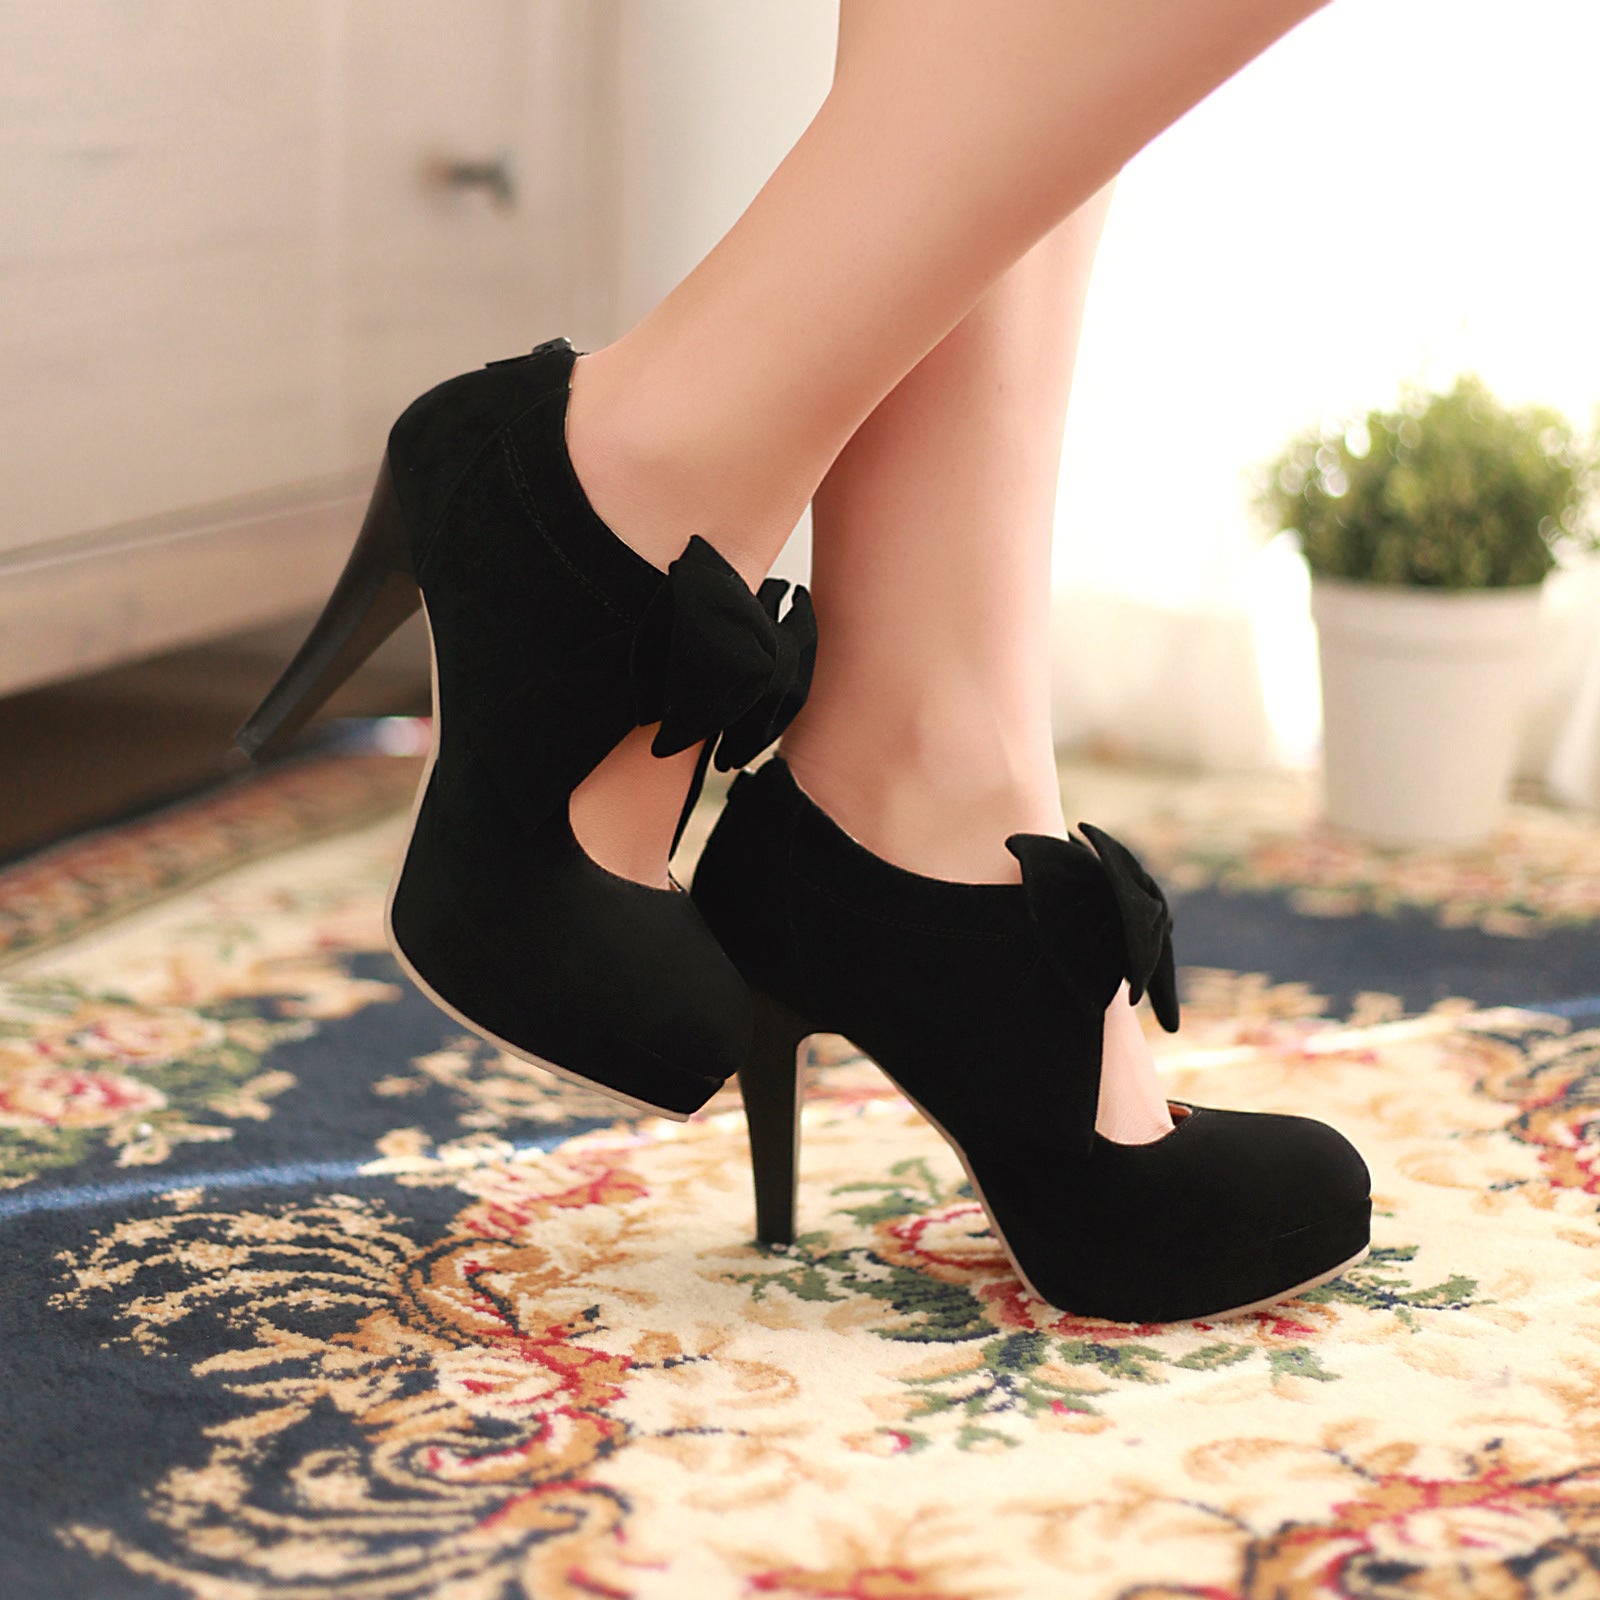 Cute Black Heels - Chunky Heels - Flared Heels - Cutout Heels - $36.00 -  Lulus